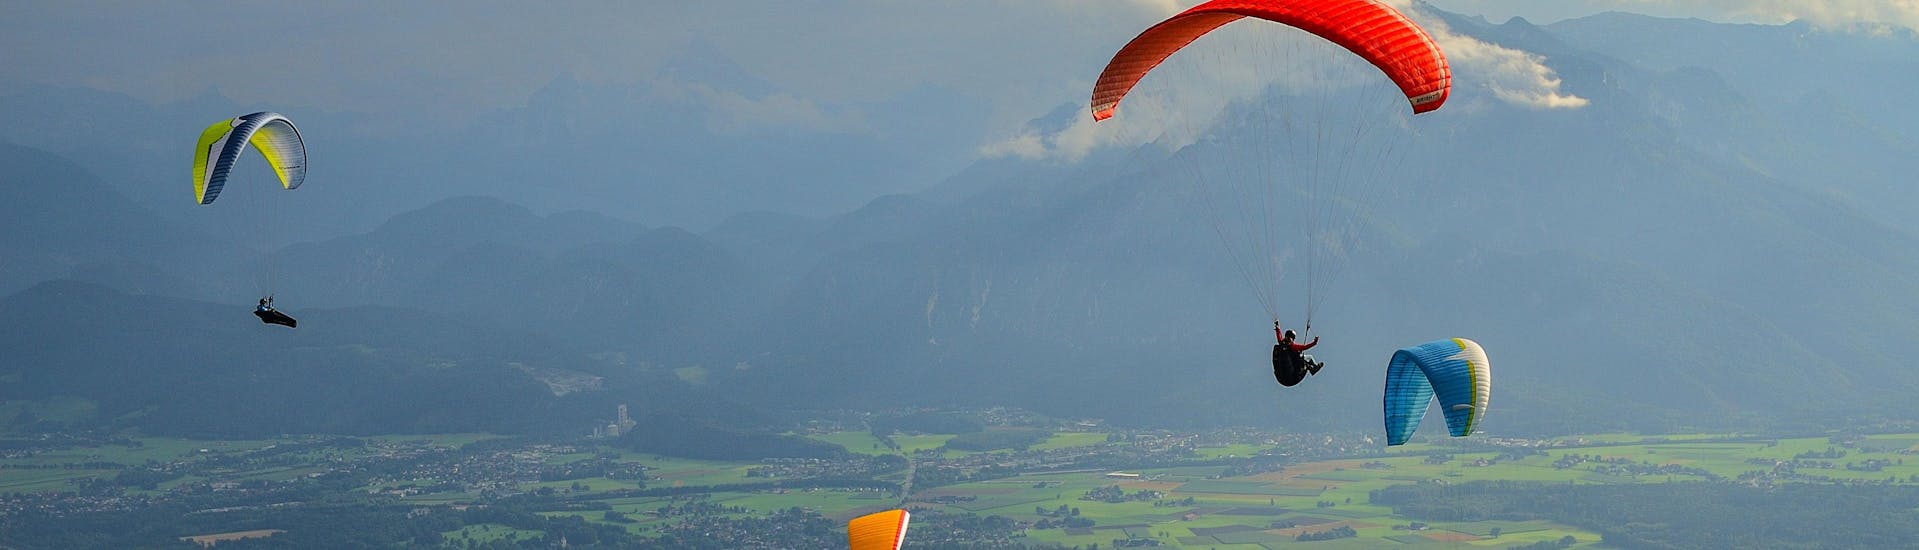 Salzburg: Een tandemvlucht vindt plaats in een van de hotspots voor paragliding.